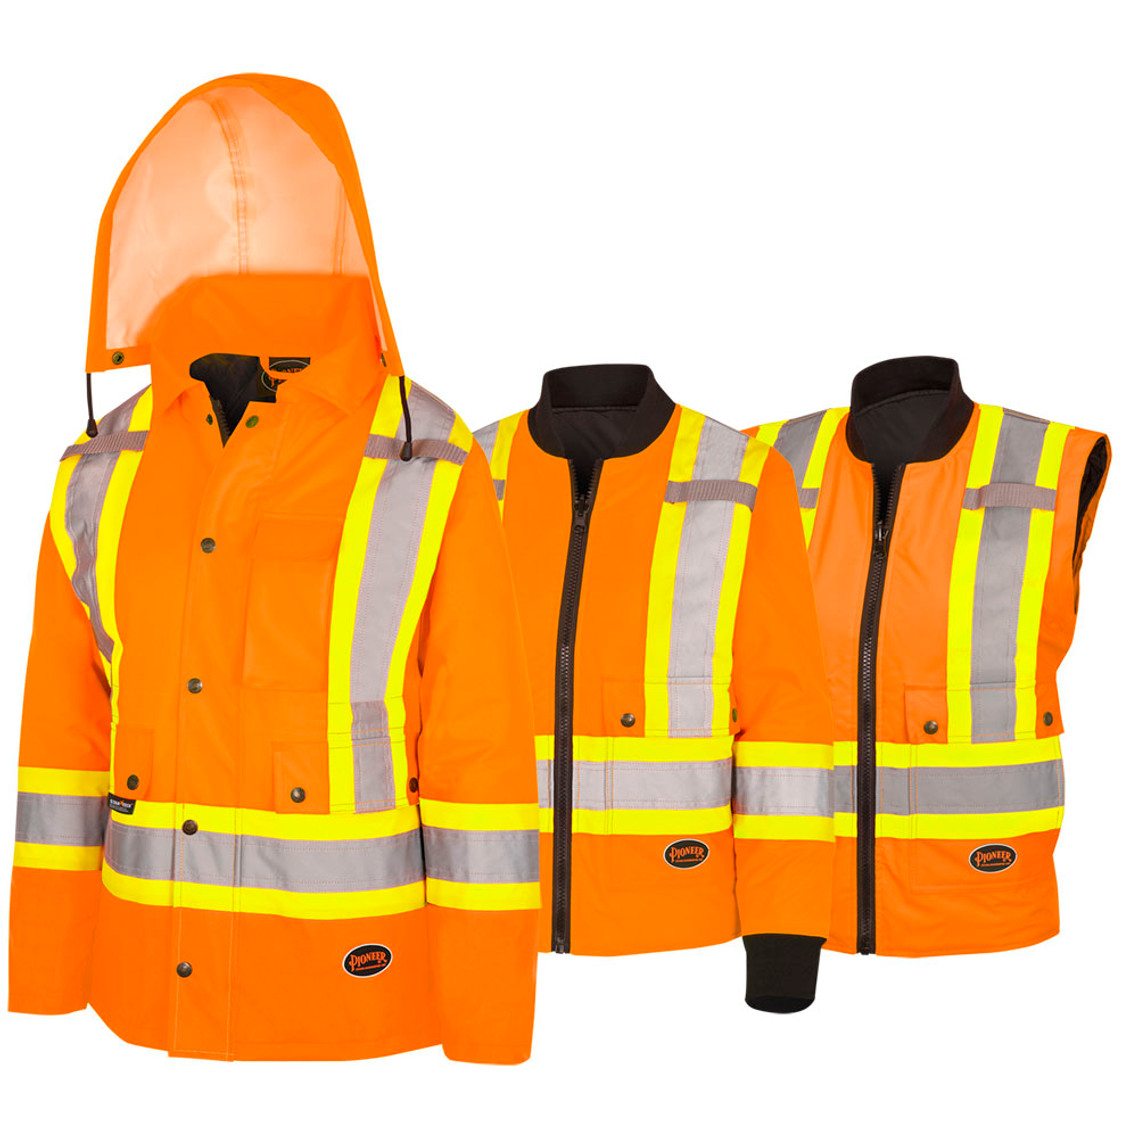 Pioneer women's 7-in-1 Waterproof Jacket - Hi-Vis Orange | SafetyWear.ca